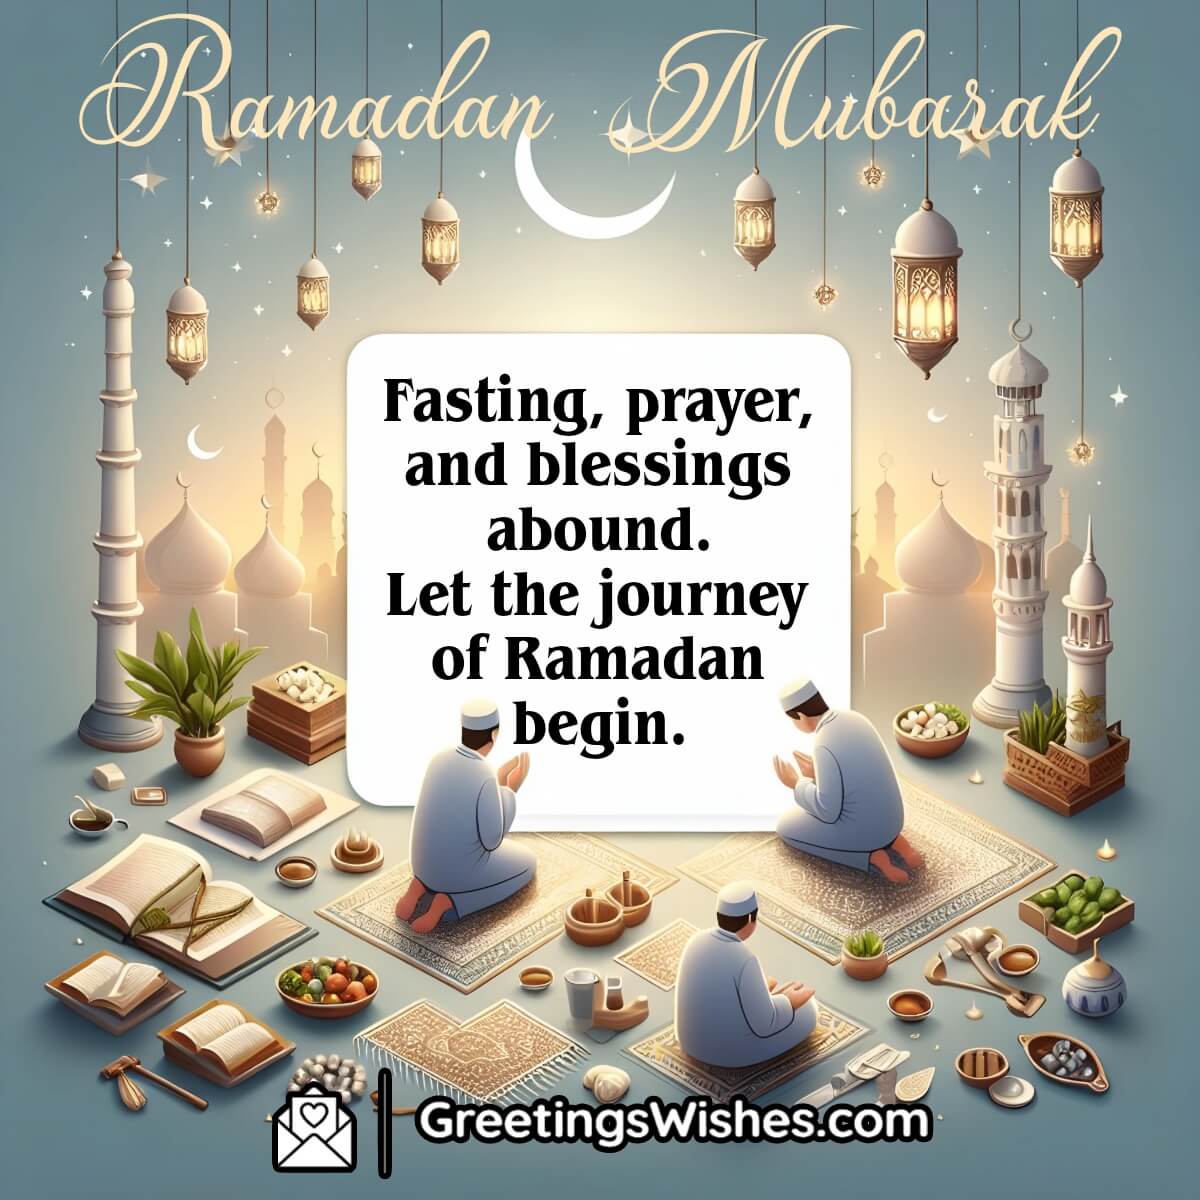 Ramadan Mubarak Captions